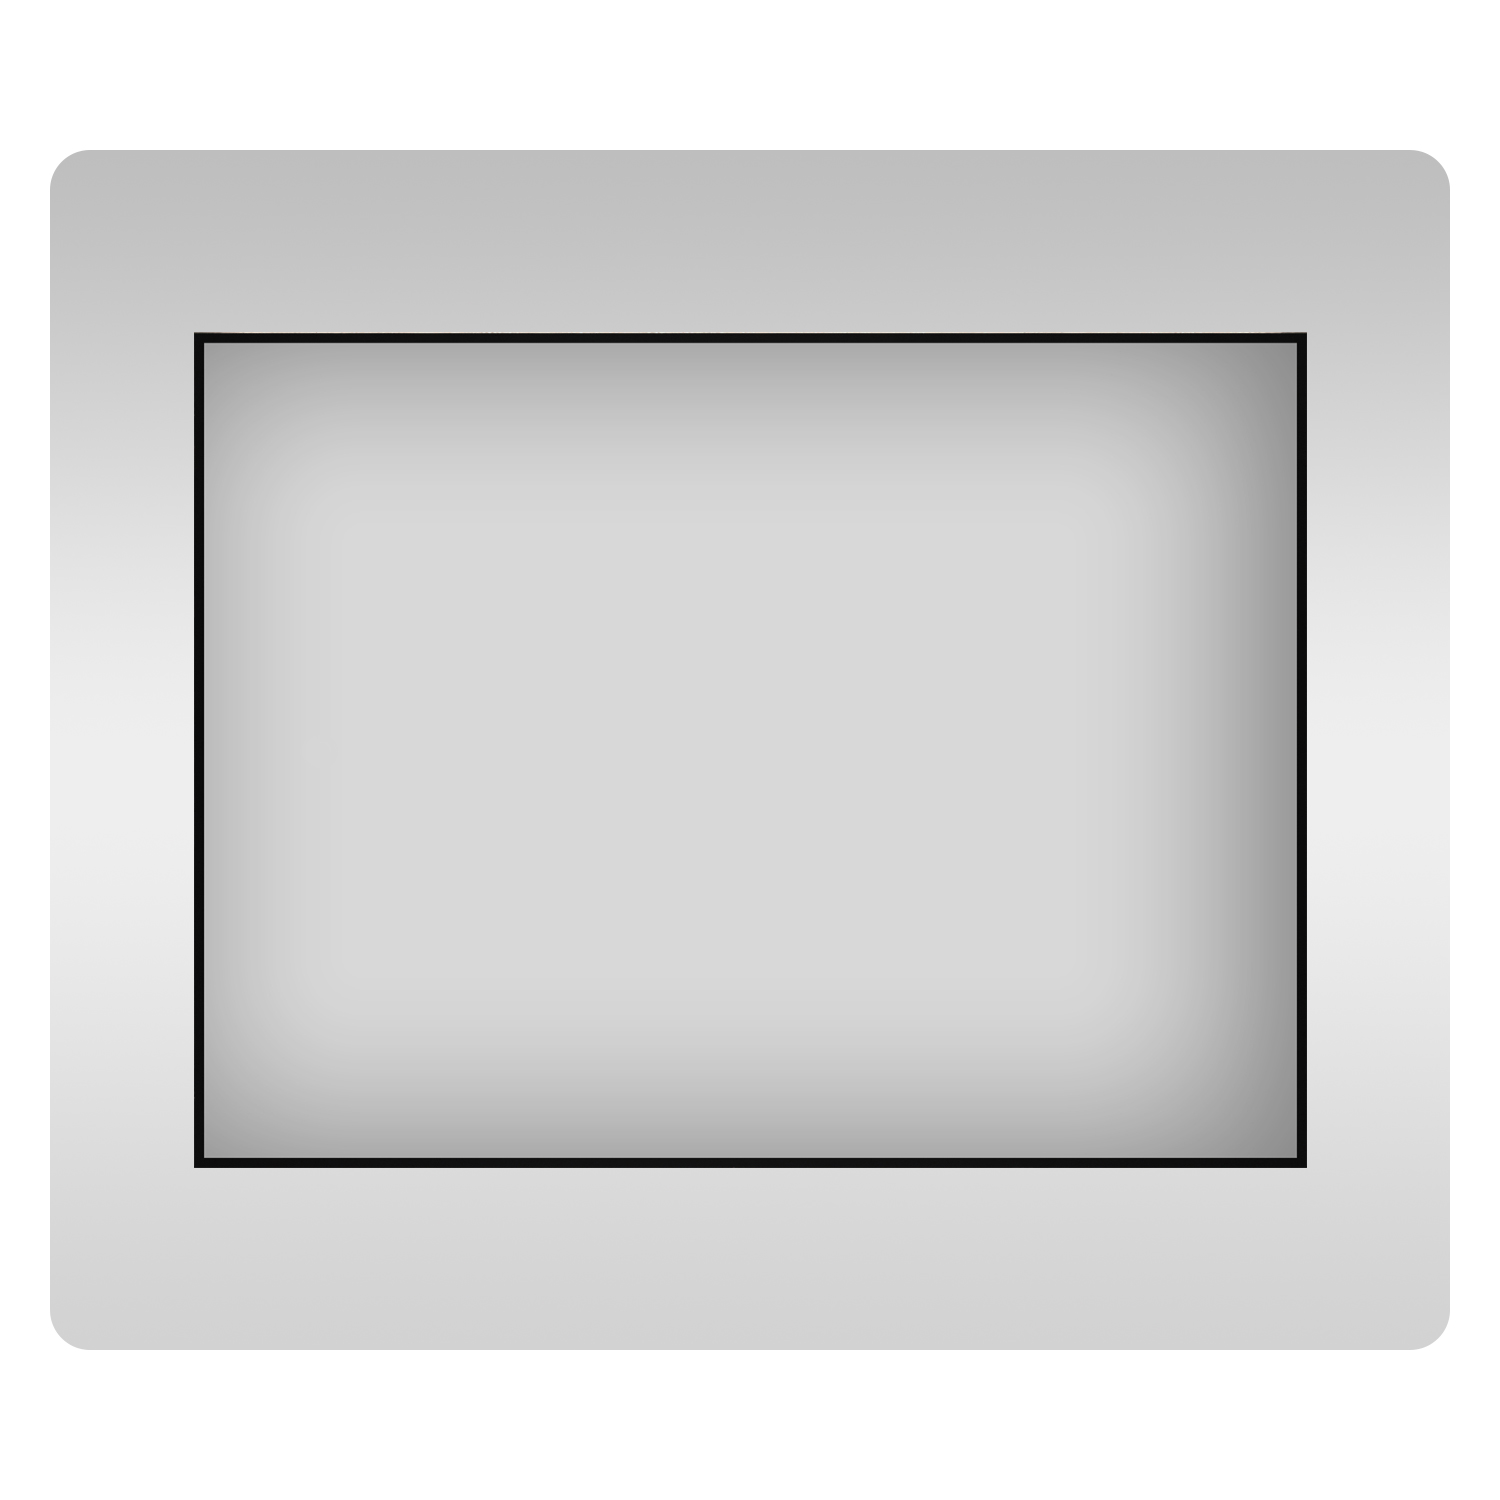 Влагостойкое прямоугольное зеркало Wellsee 7 Rays' Spectrum 172200690, 90х70 см